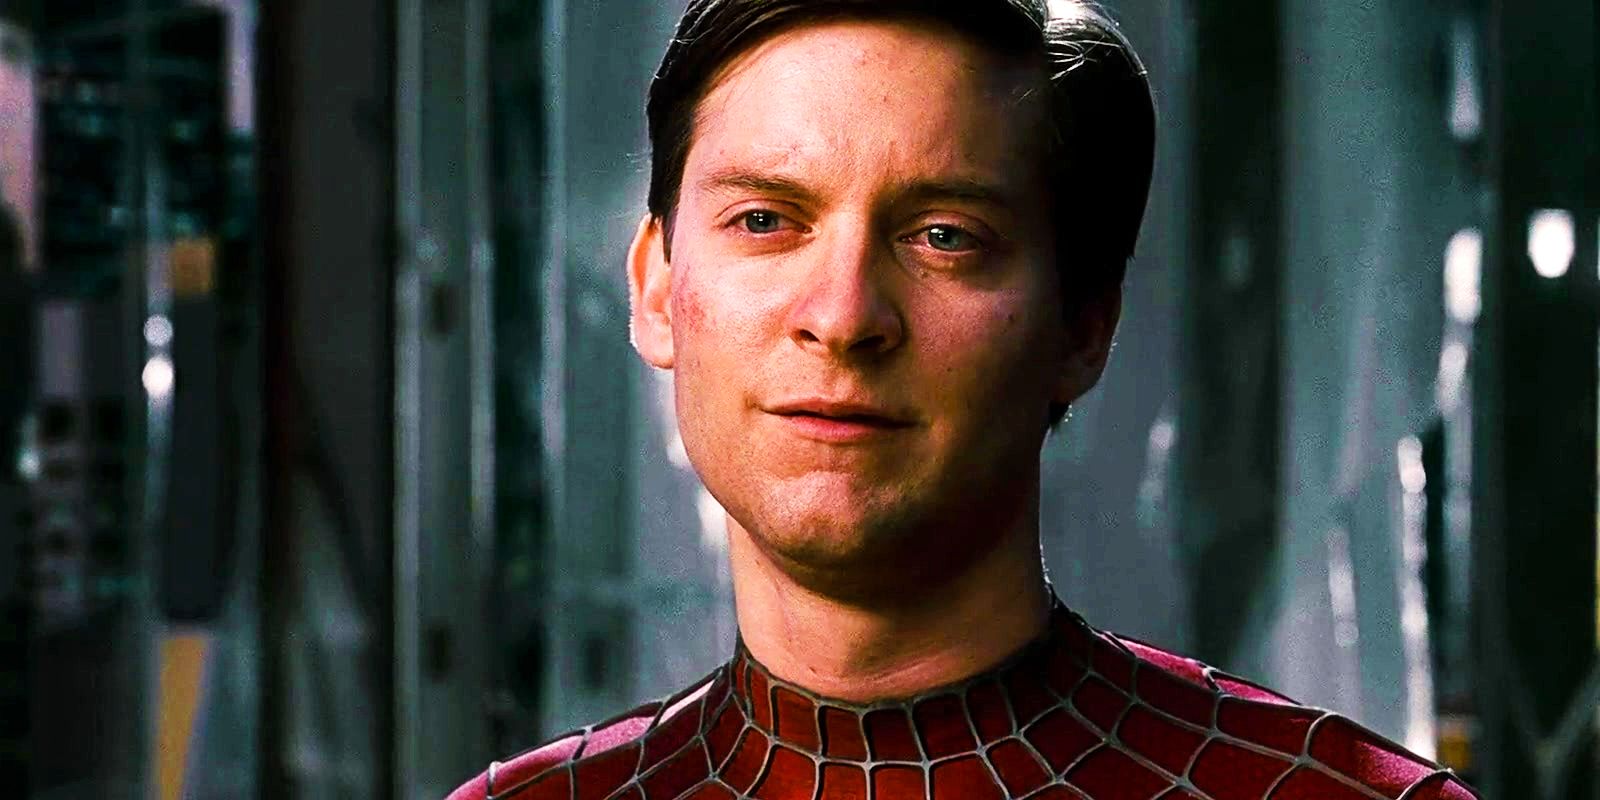 El actor villano de Spider-Man 4 habla sobre la secuela cancelada de Sam Raimi 14 años después de que fuera descartada